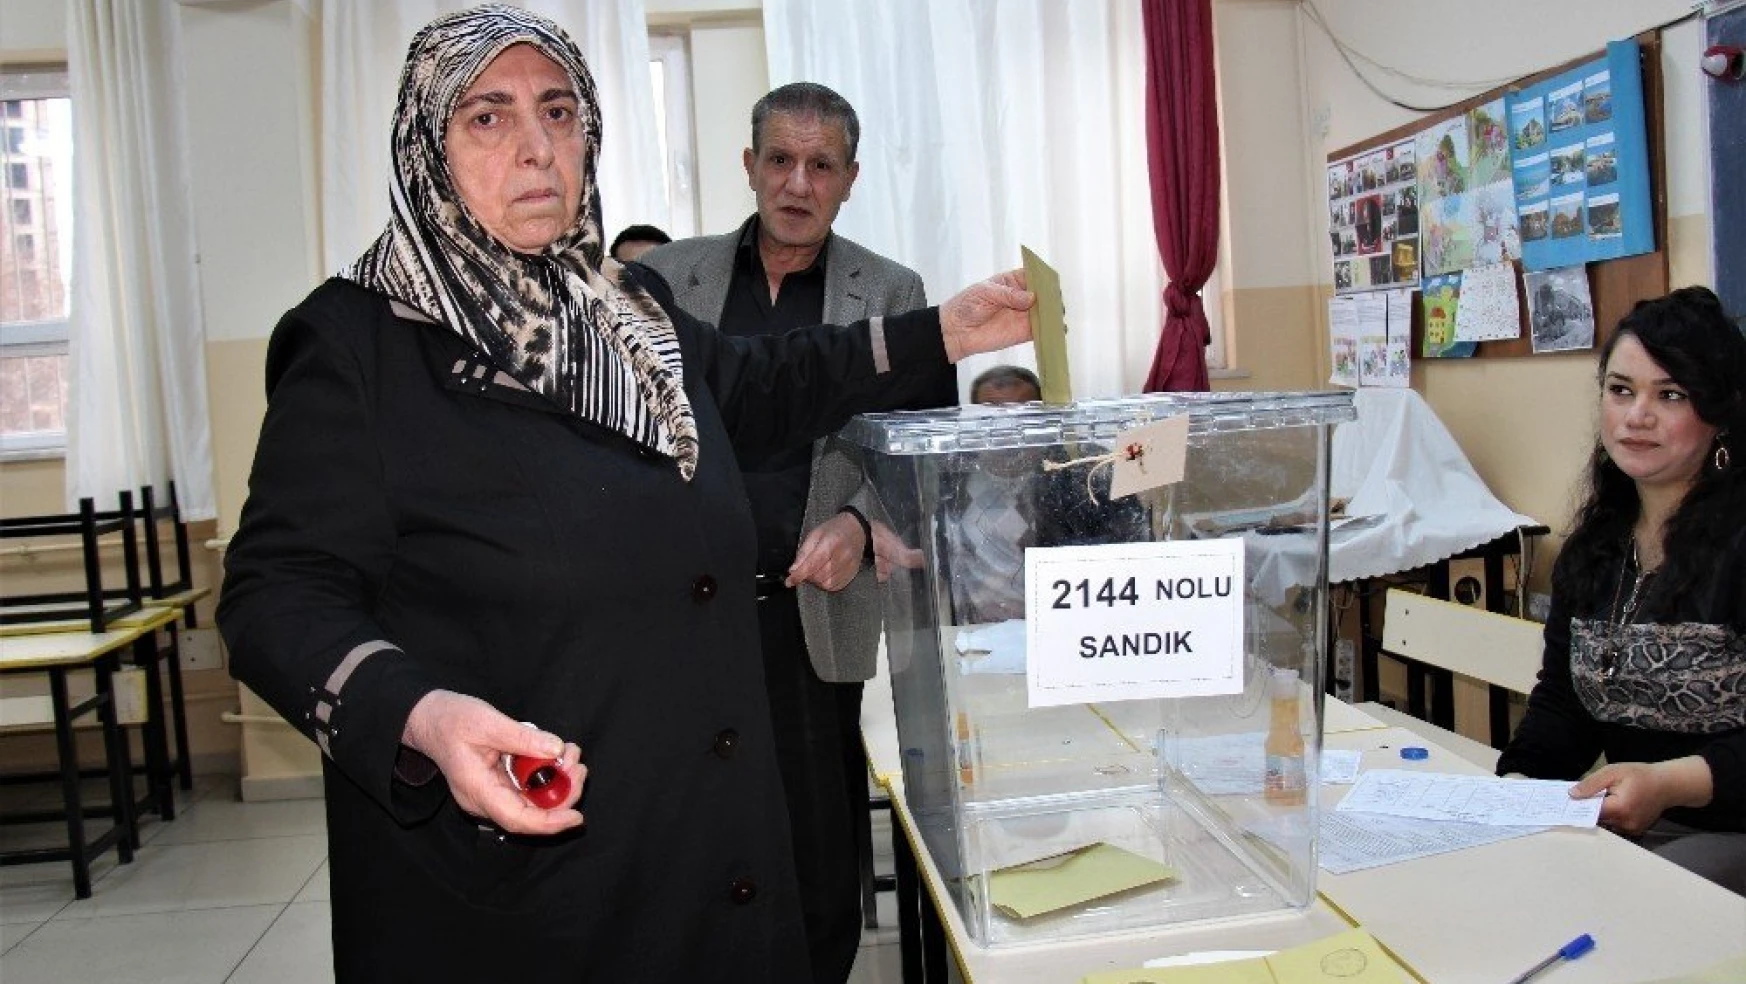 Elazığ'da Oy Kullanma İşlemi Başladı